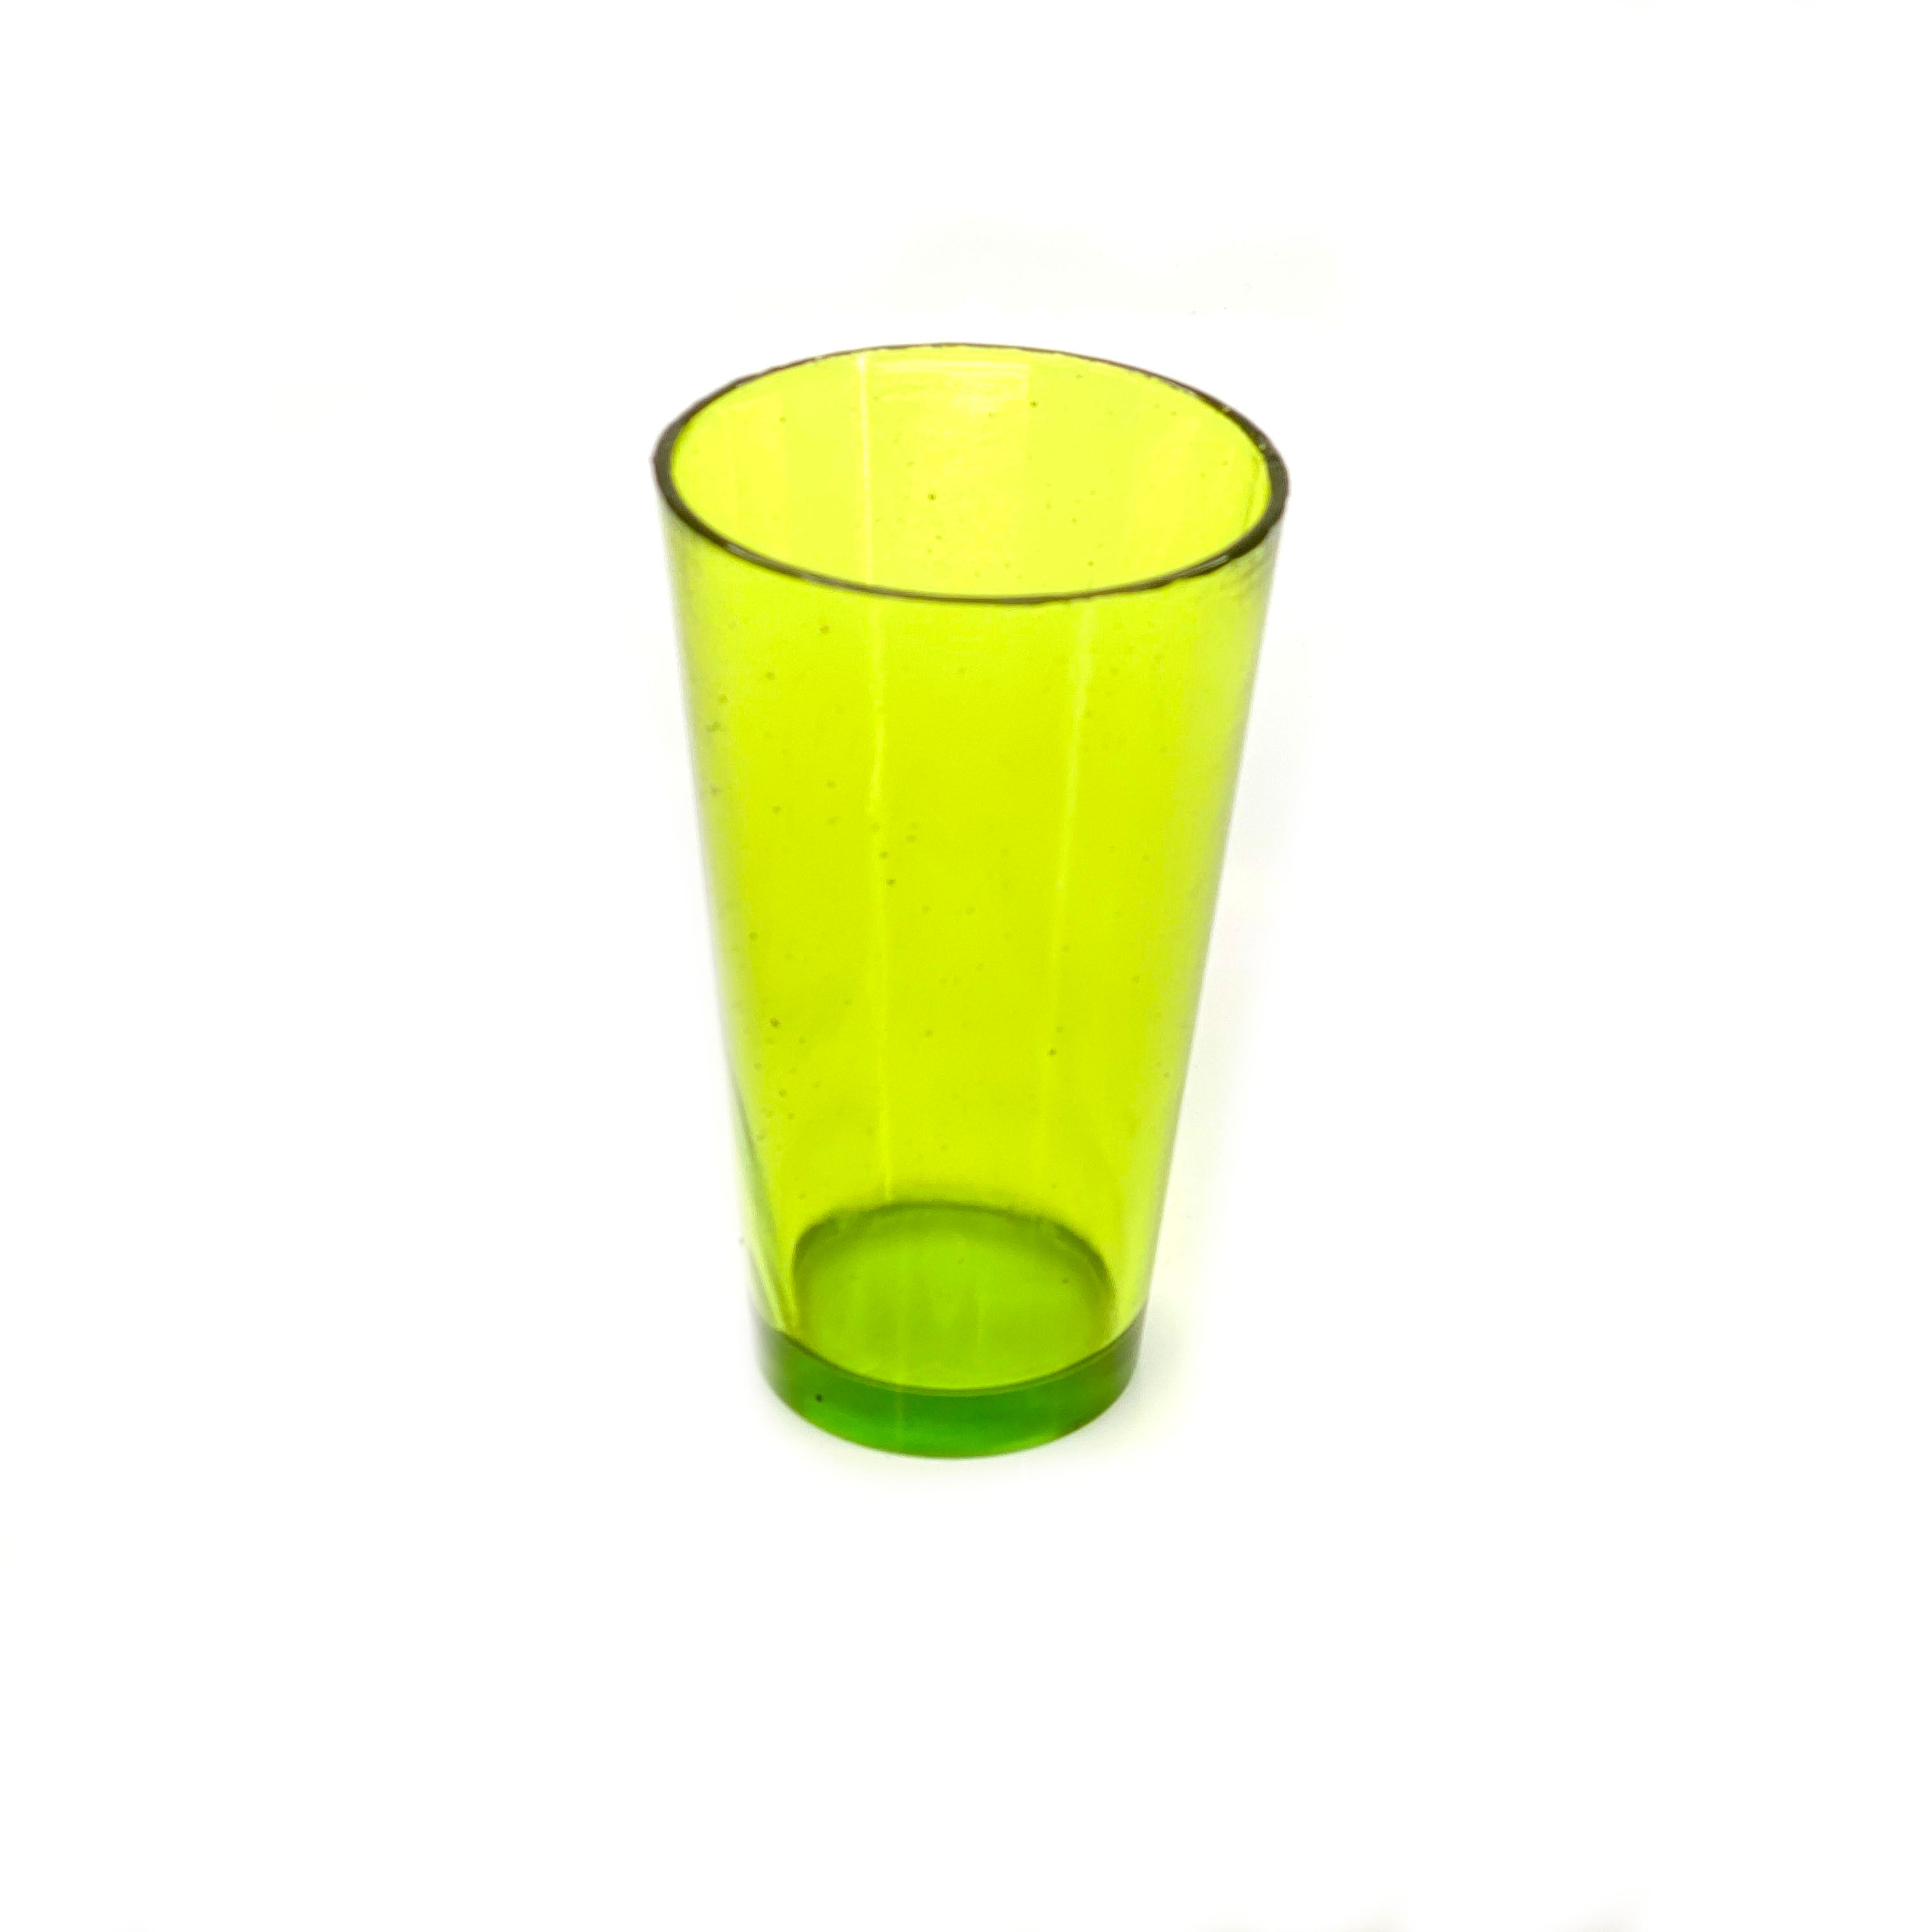 SMASHProps Breakaway Beer Pint Glass Prop - LIGHT GREEN translucent - Light Green Translucent